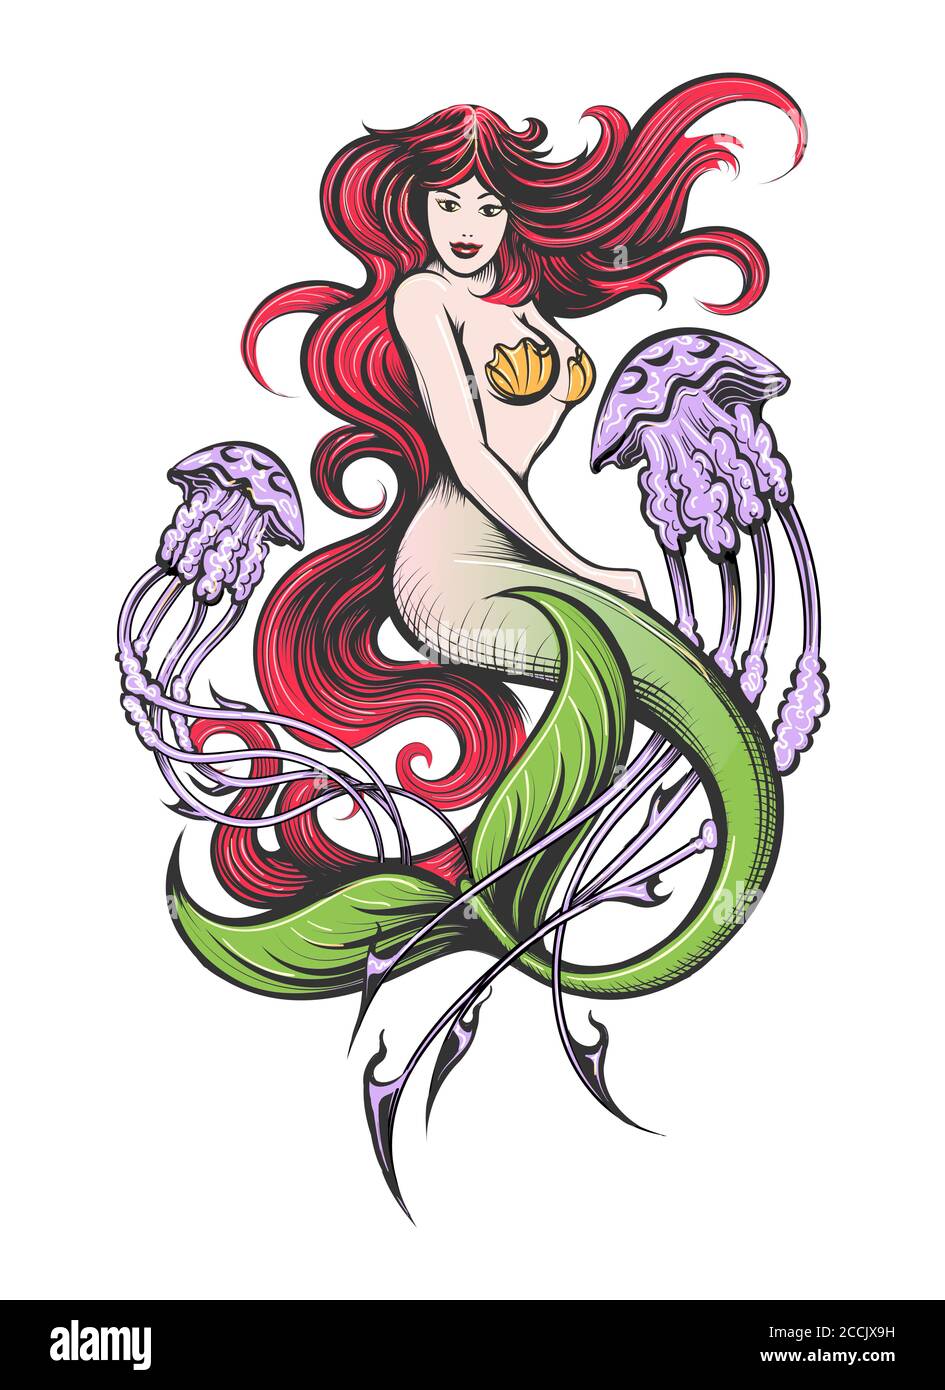 Sirena con capelli rossi lunghi con due tatuaggi di meduse viola. Illustrazione vettoriale. Illustrazione Vettoriale